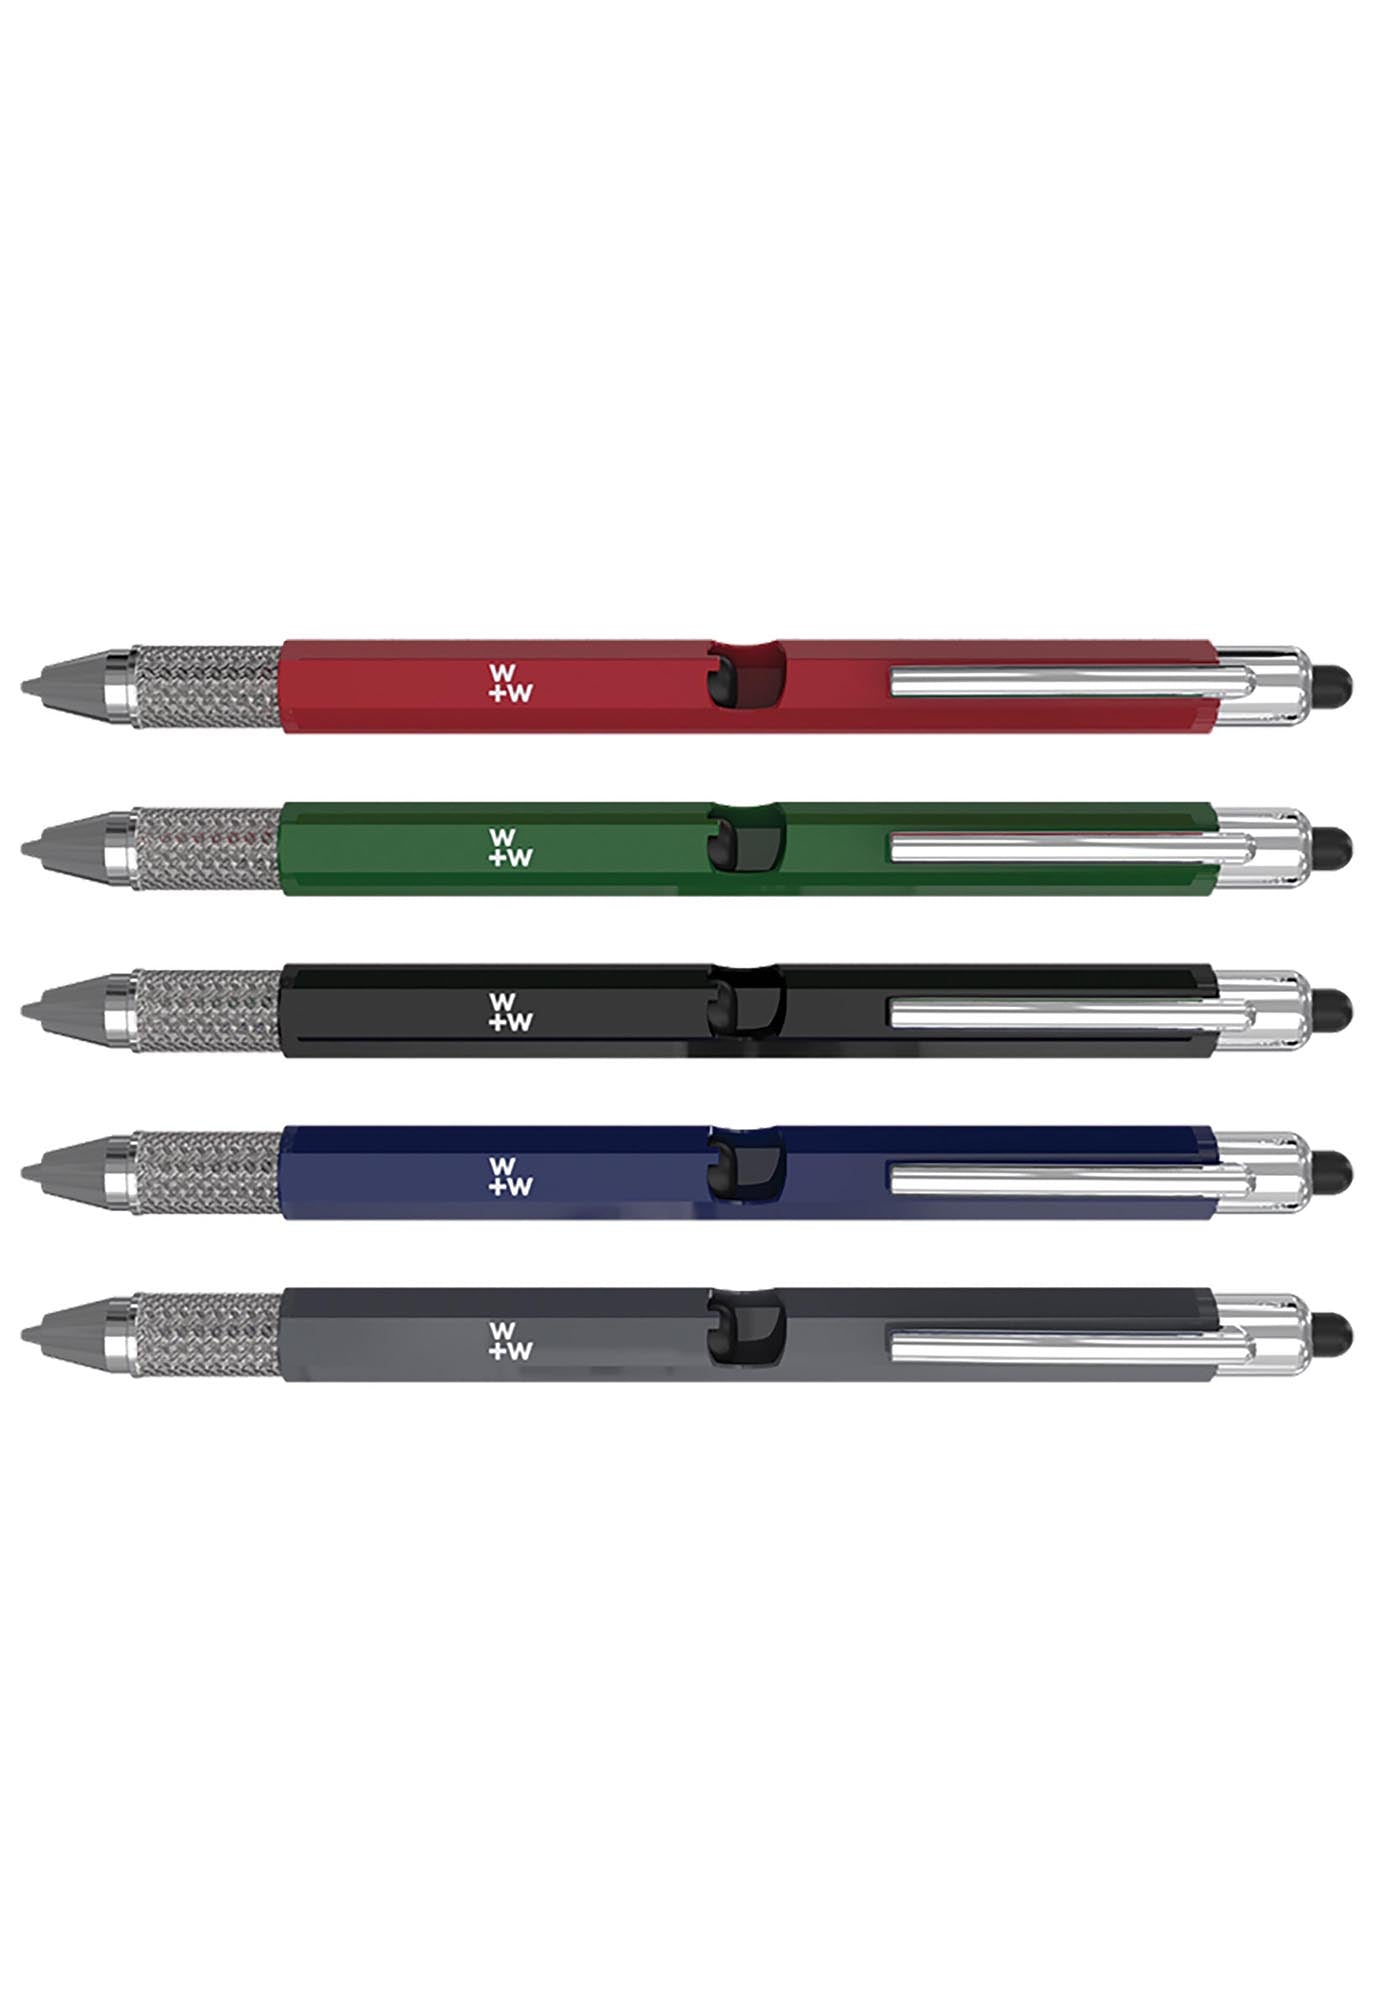 6-in-1 multi-function pen